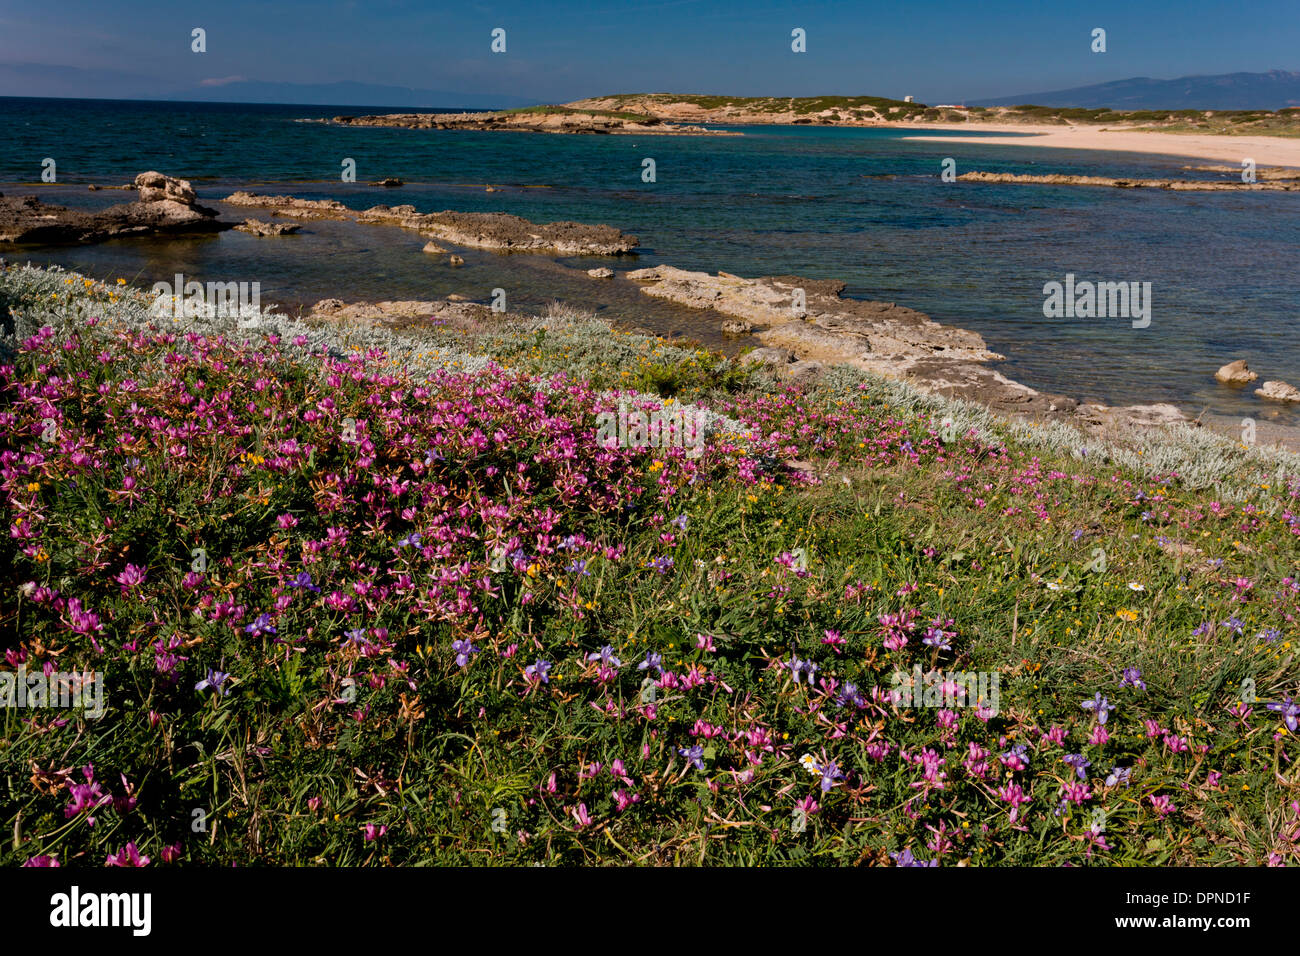 Fiorito di habitat costieri, compresi cluster di the, Hedysarum glomeratum in fiore nella penisola del Sinis, Sardegna, Italia. Foto Stock